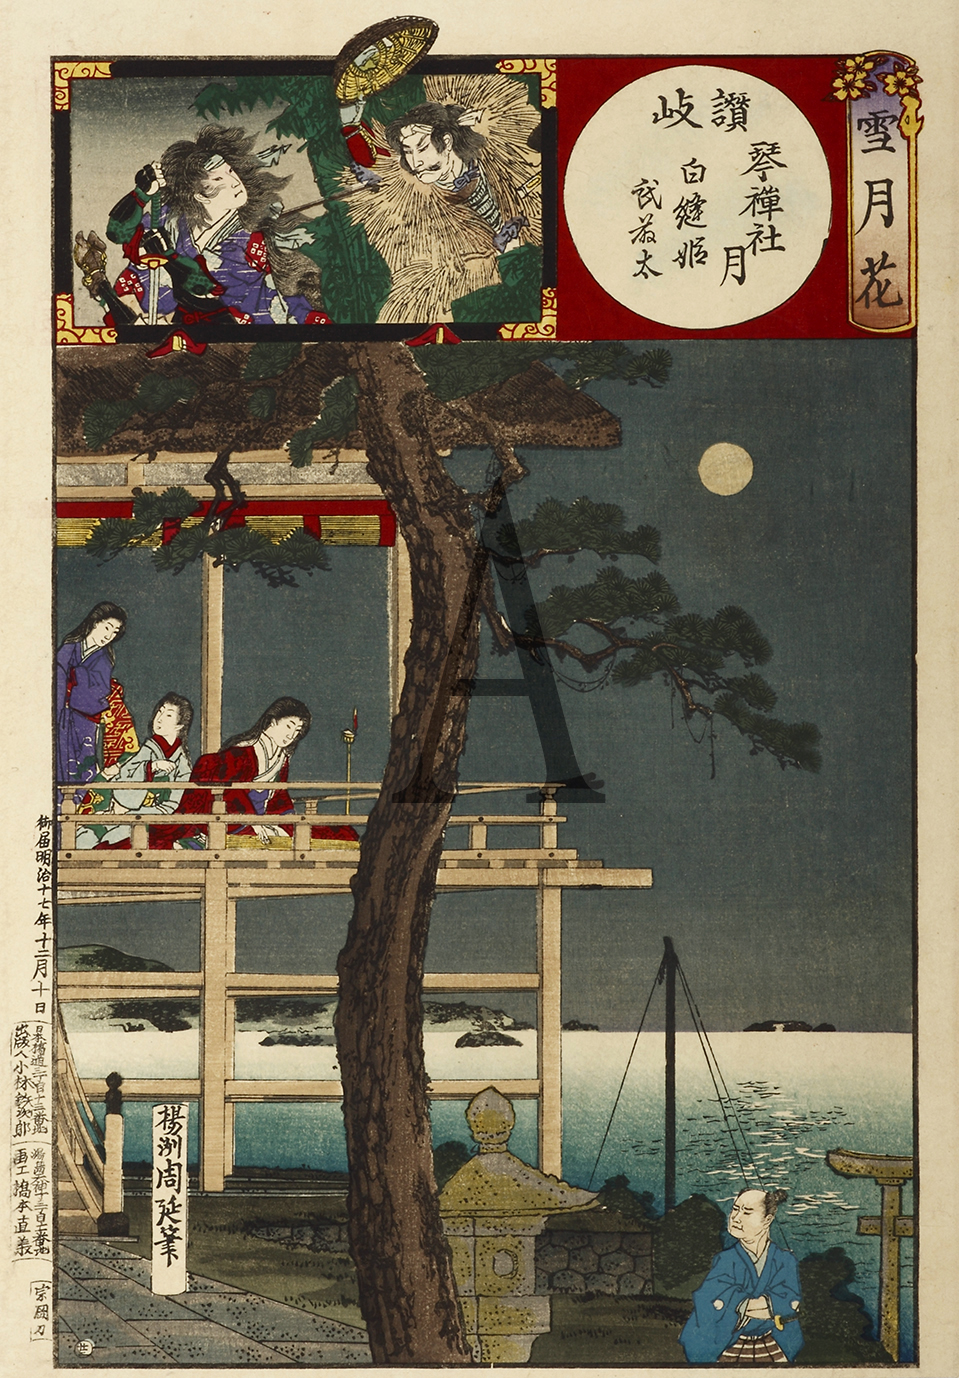 Setsugekka: Chikuzen, Tsukushi hana, Kato Shigeuji, Maki no kata, Chidori no mae. (Chikusen, Flowers of Tsukushi, Kato Shigeuji, Lady Maki and Lady Chidori). - Antique Print from 1884